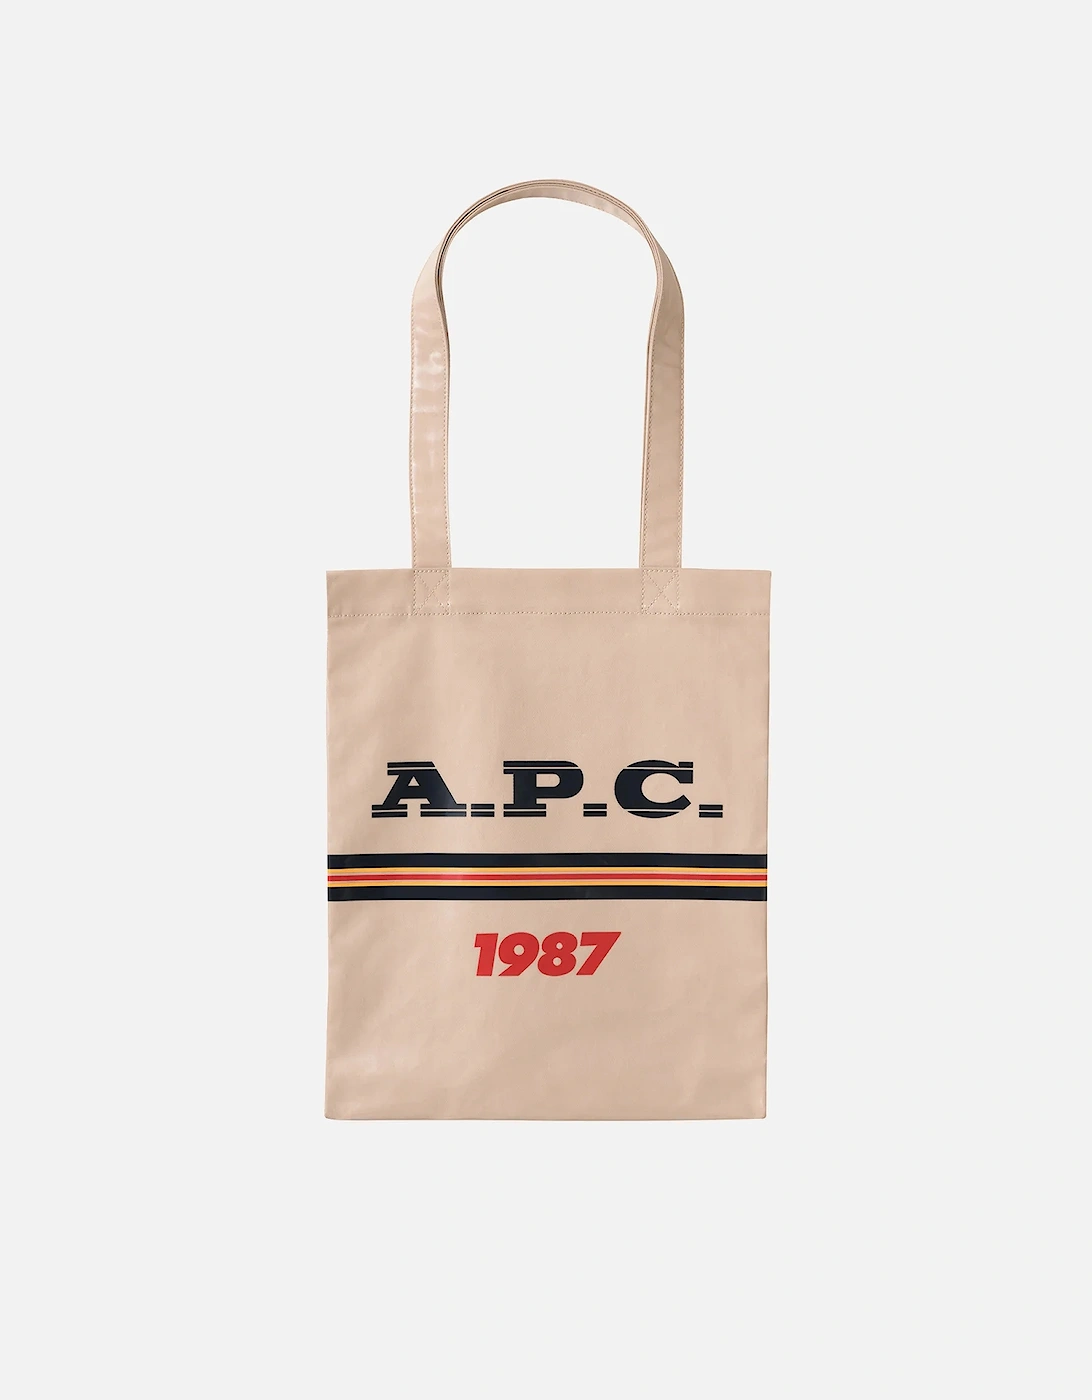 A.P.C. Women's Tote Lou Bag - Grey - A.P.C. - Home - A.P.C. Women's Tote Lou Bag - Grey, 2 of 1